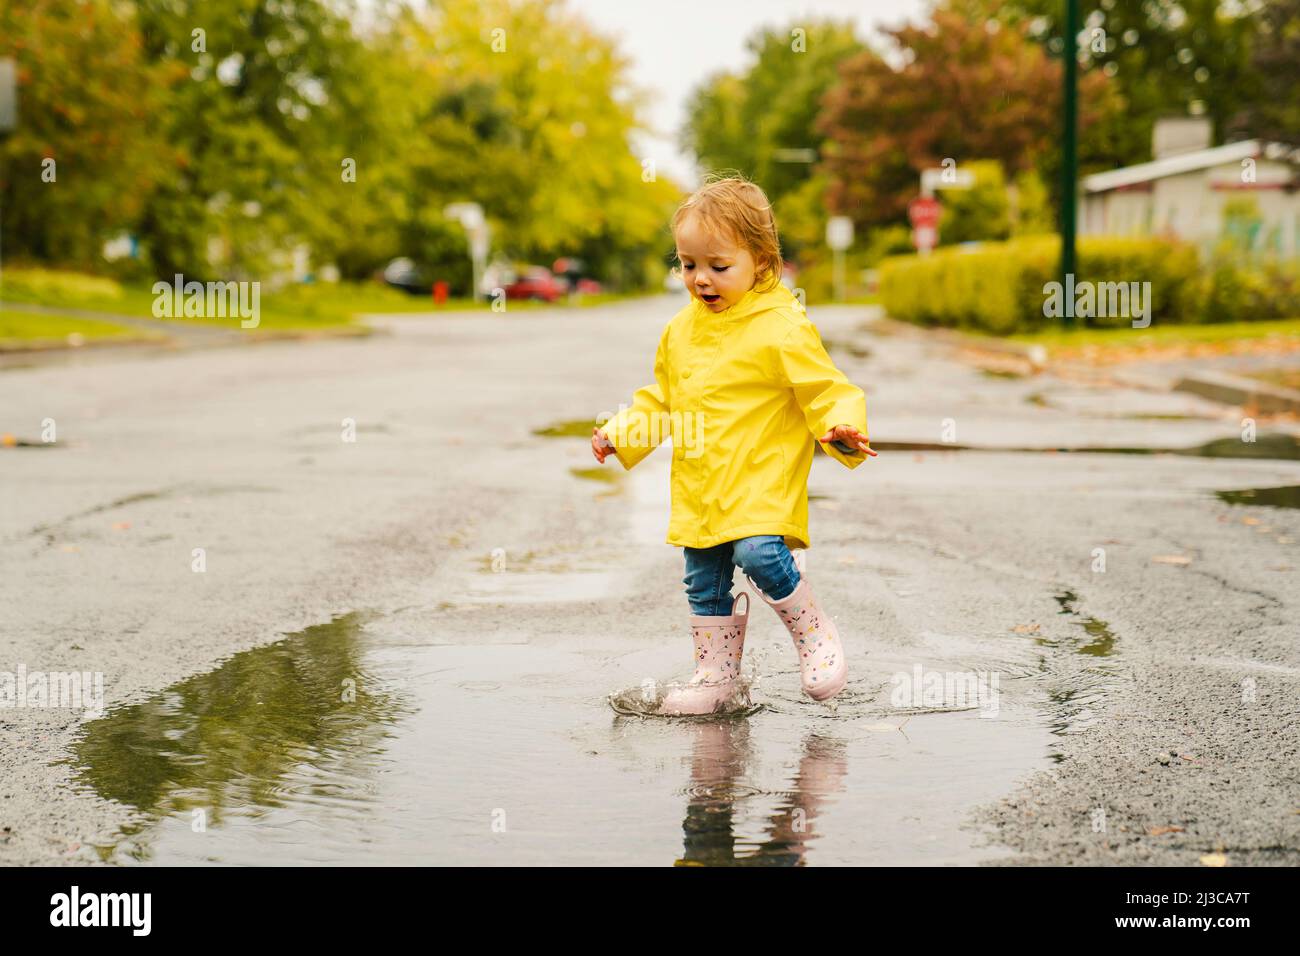 lindo bebé con abrigo amarillo impermeable y botas jugando la lluvia Fotografía de - Alamy